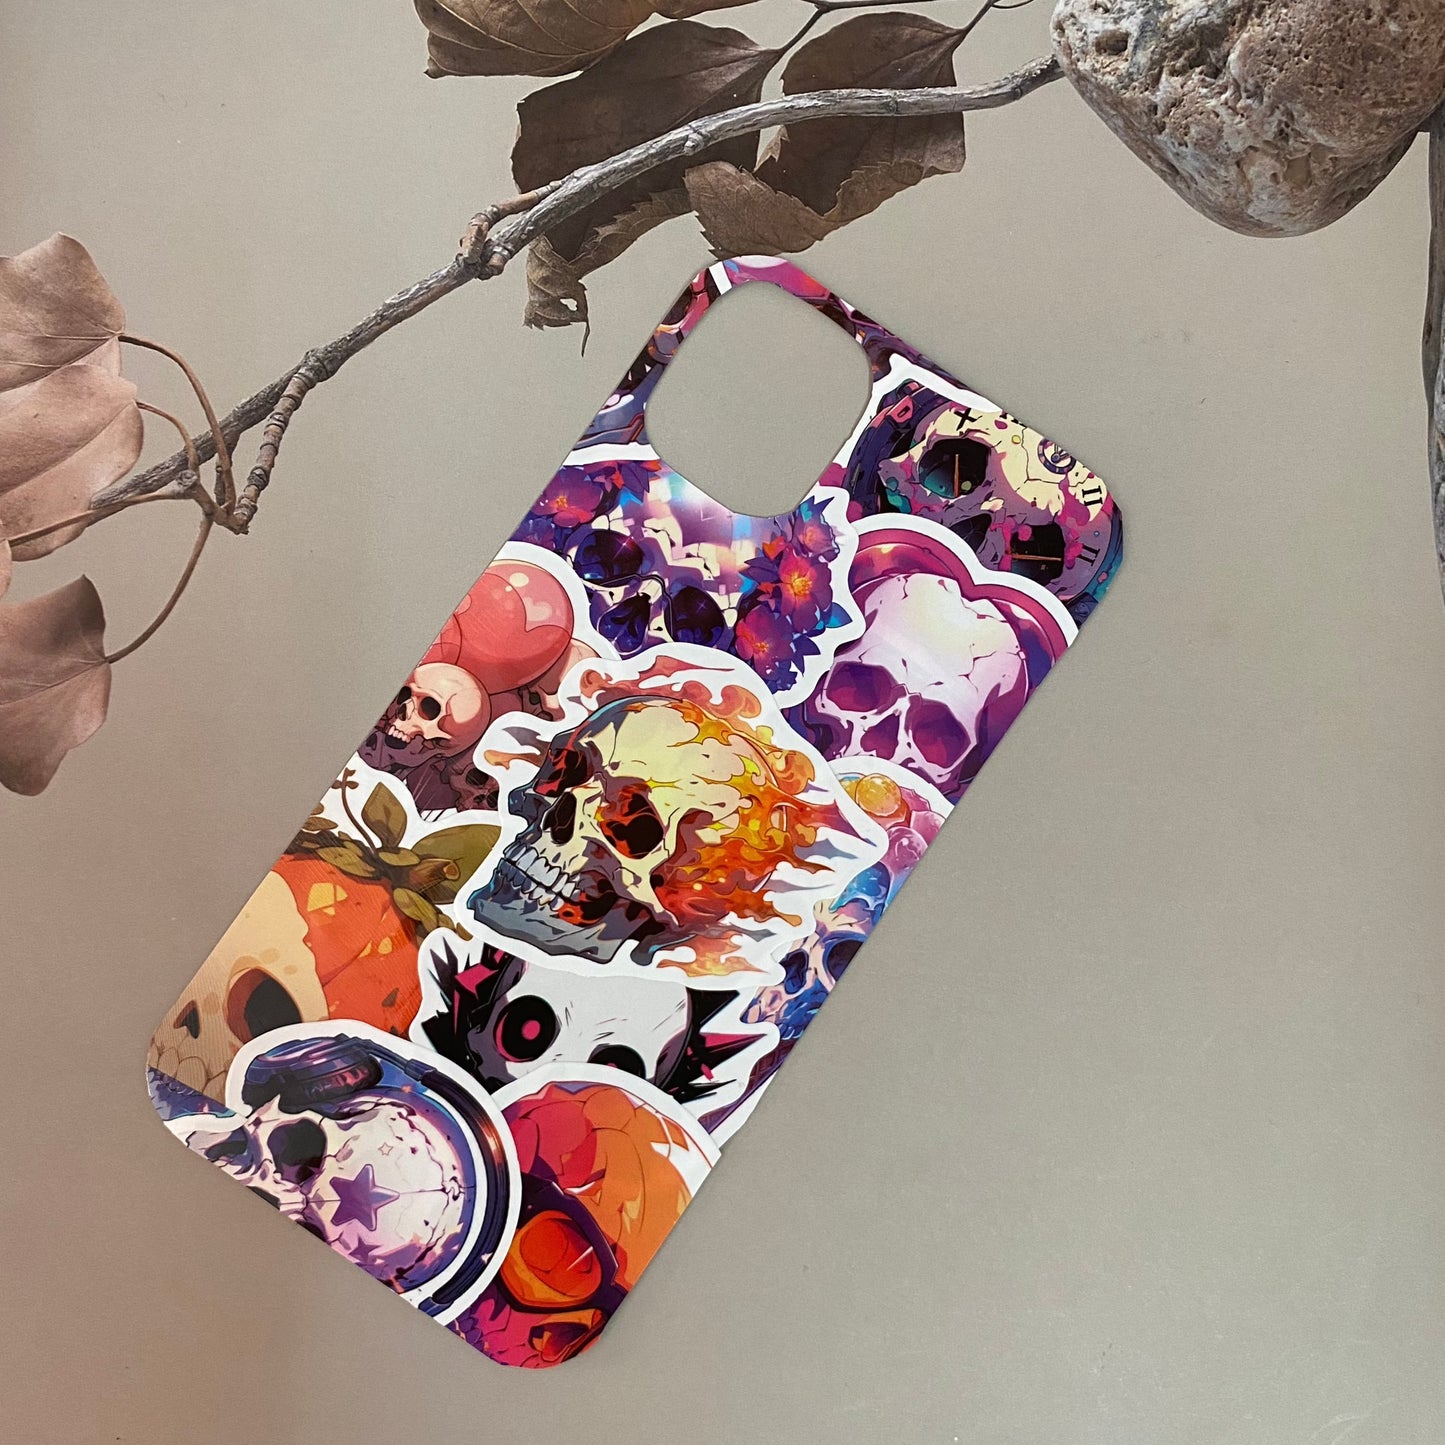 INSNIC Kreative wasserdichte Totenkopf-Aufkleber für selbstgemachte iPhone-Hüllen